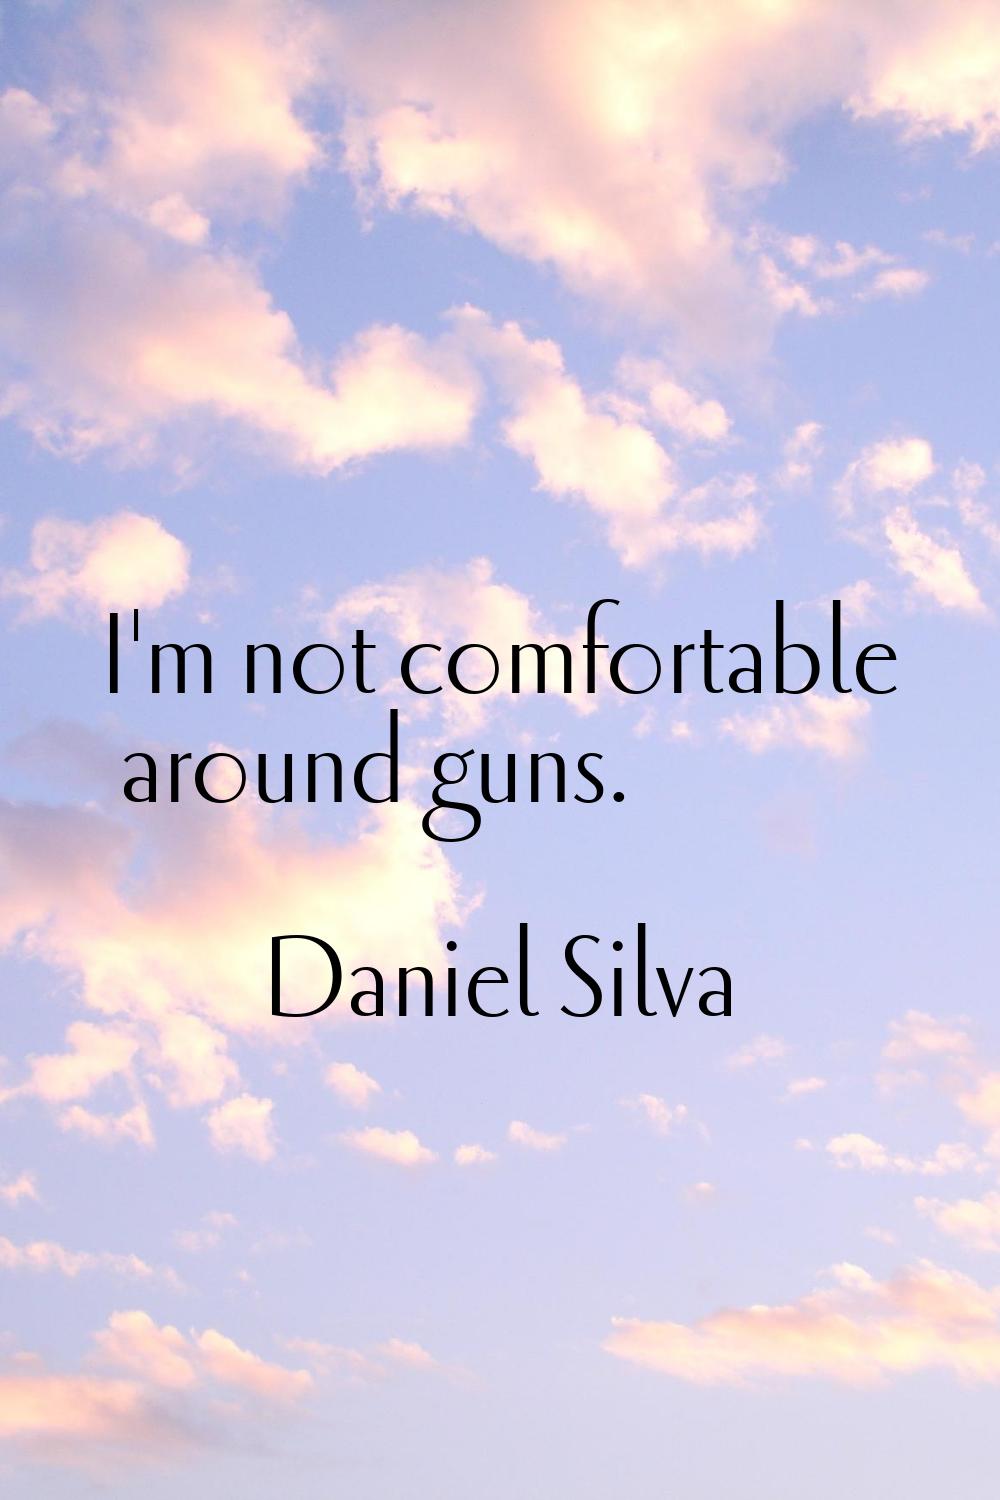 I'm not comfortable around guns.